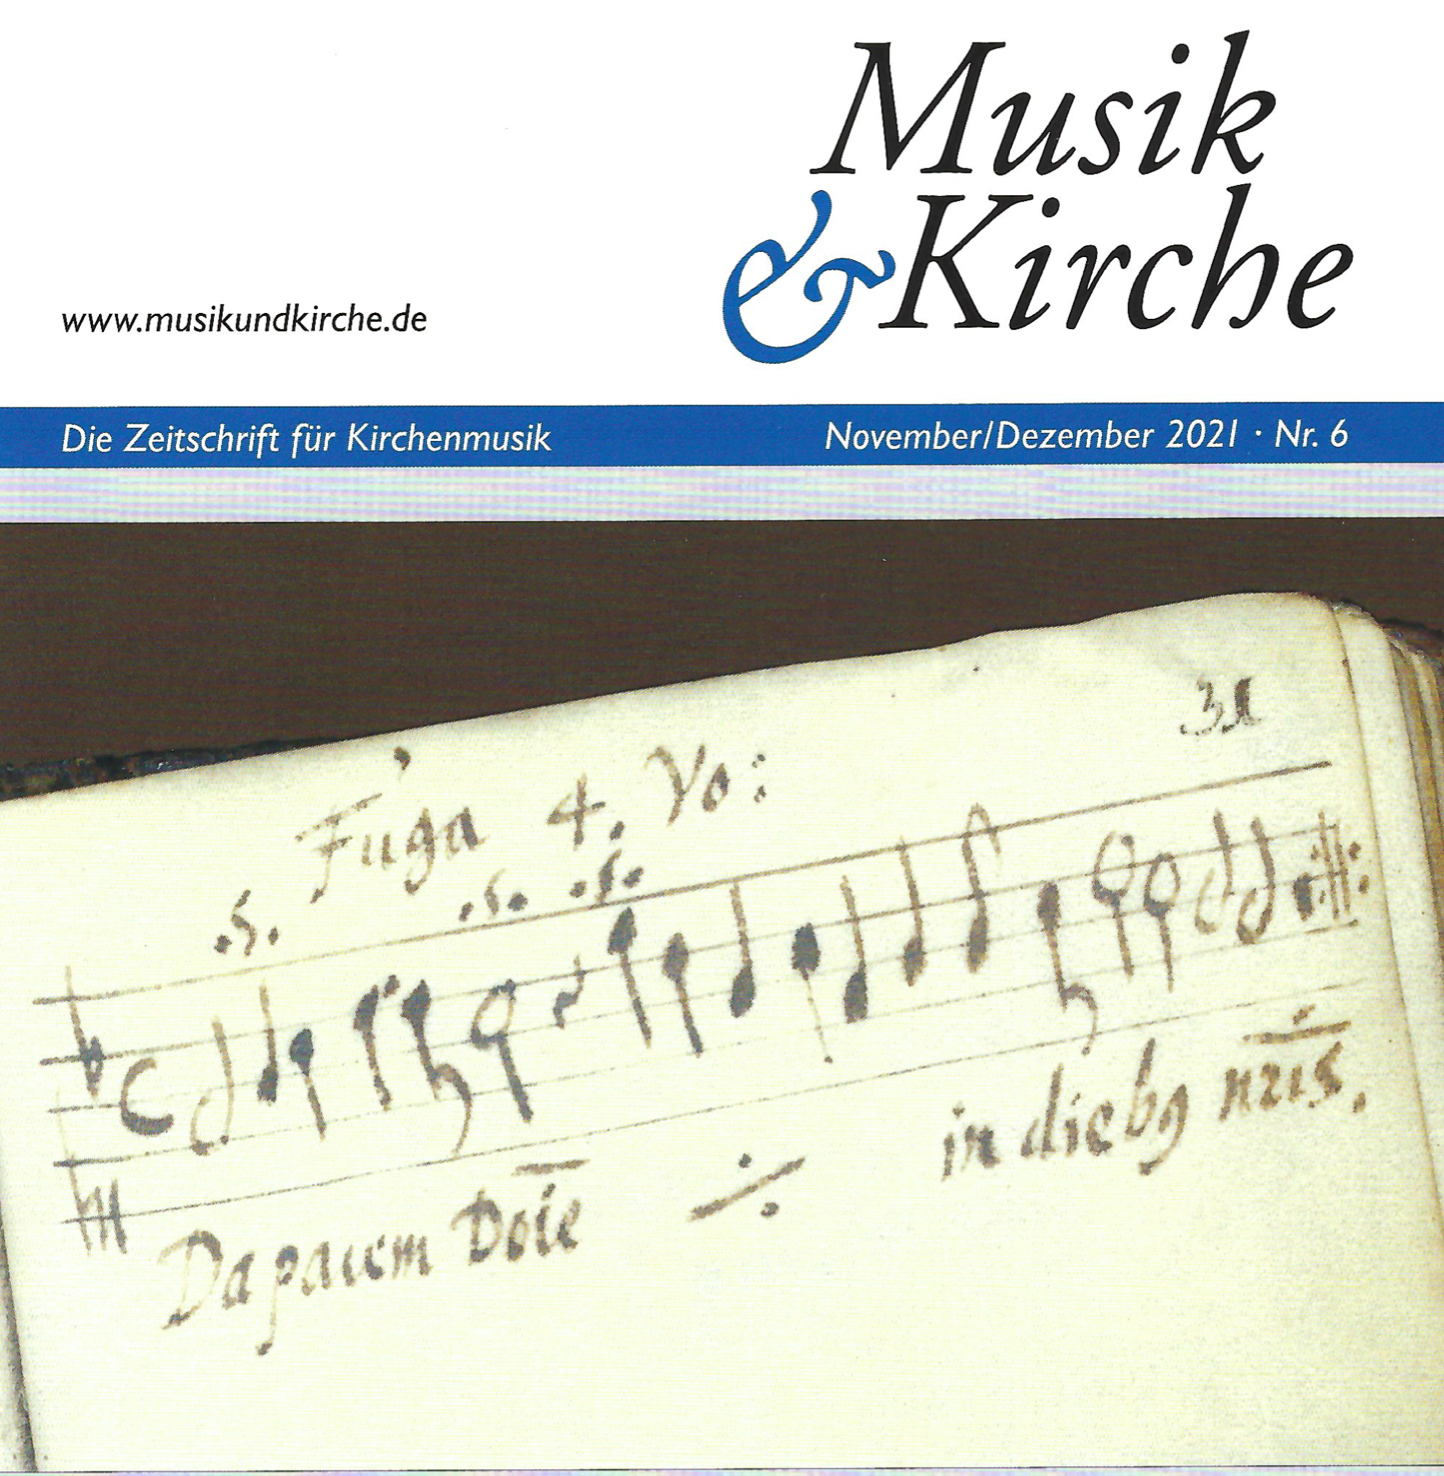 Beethovens "Fantasie für Klavier, Chor und Orchester in c-moll op. 80